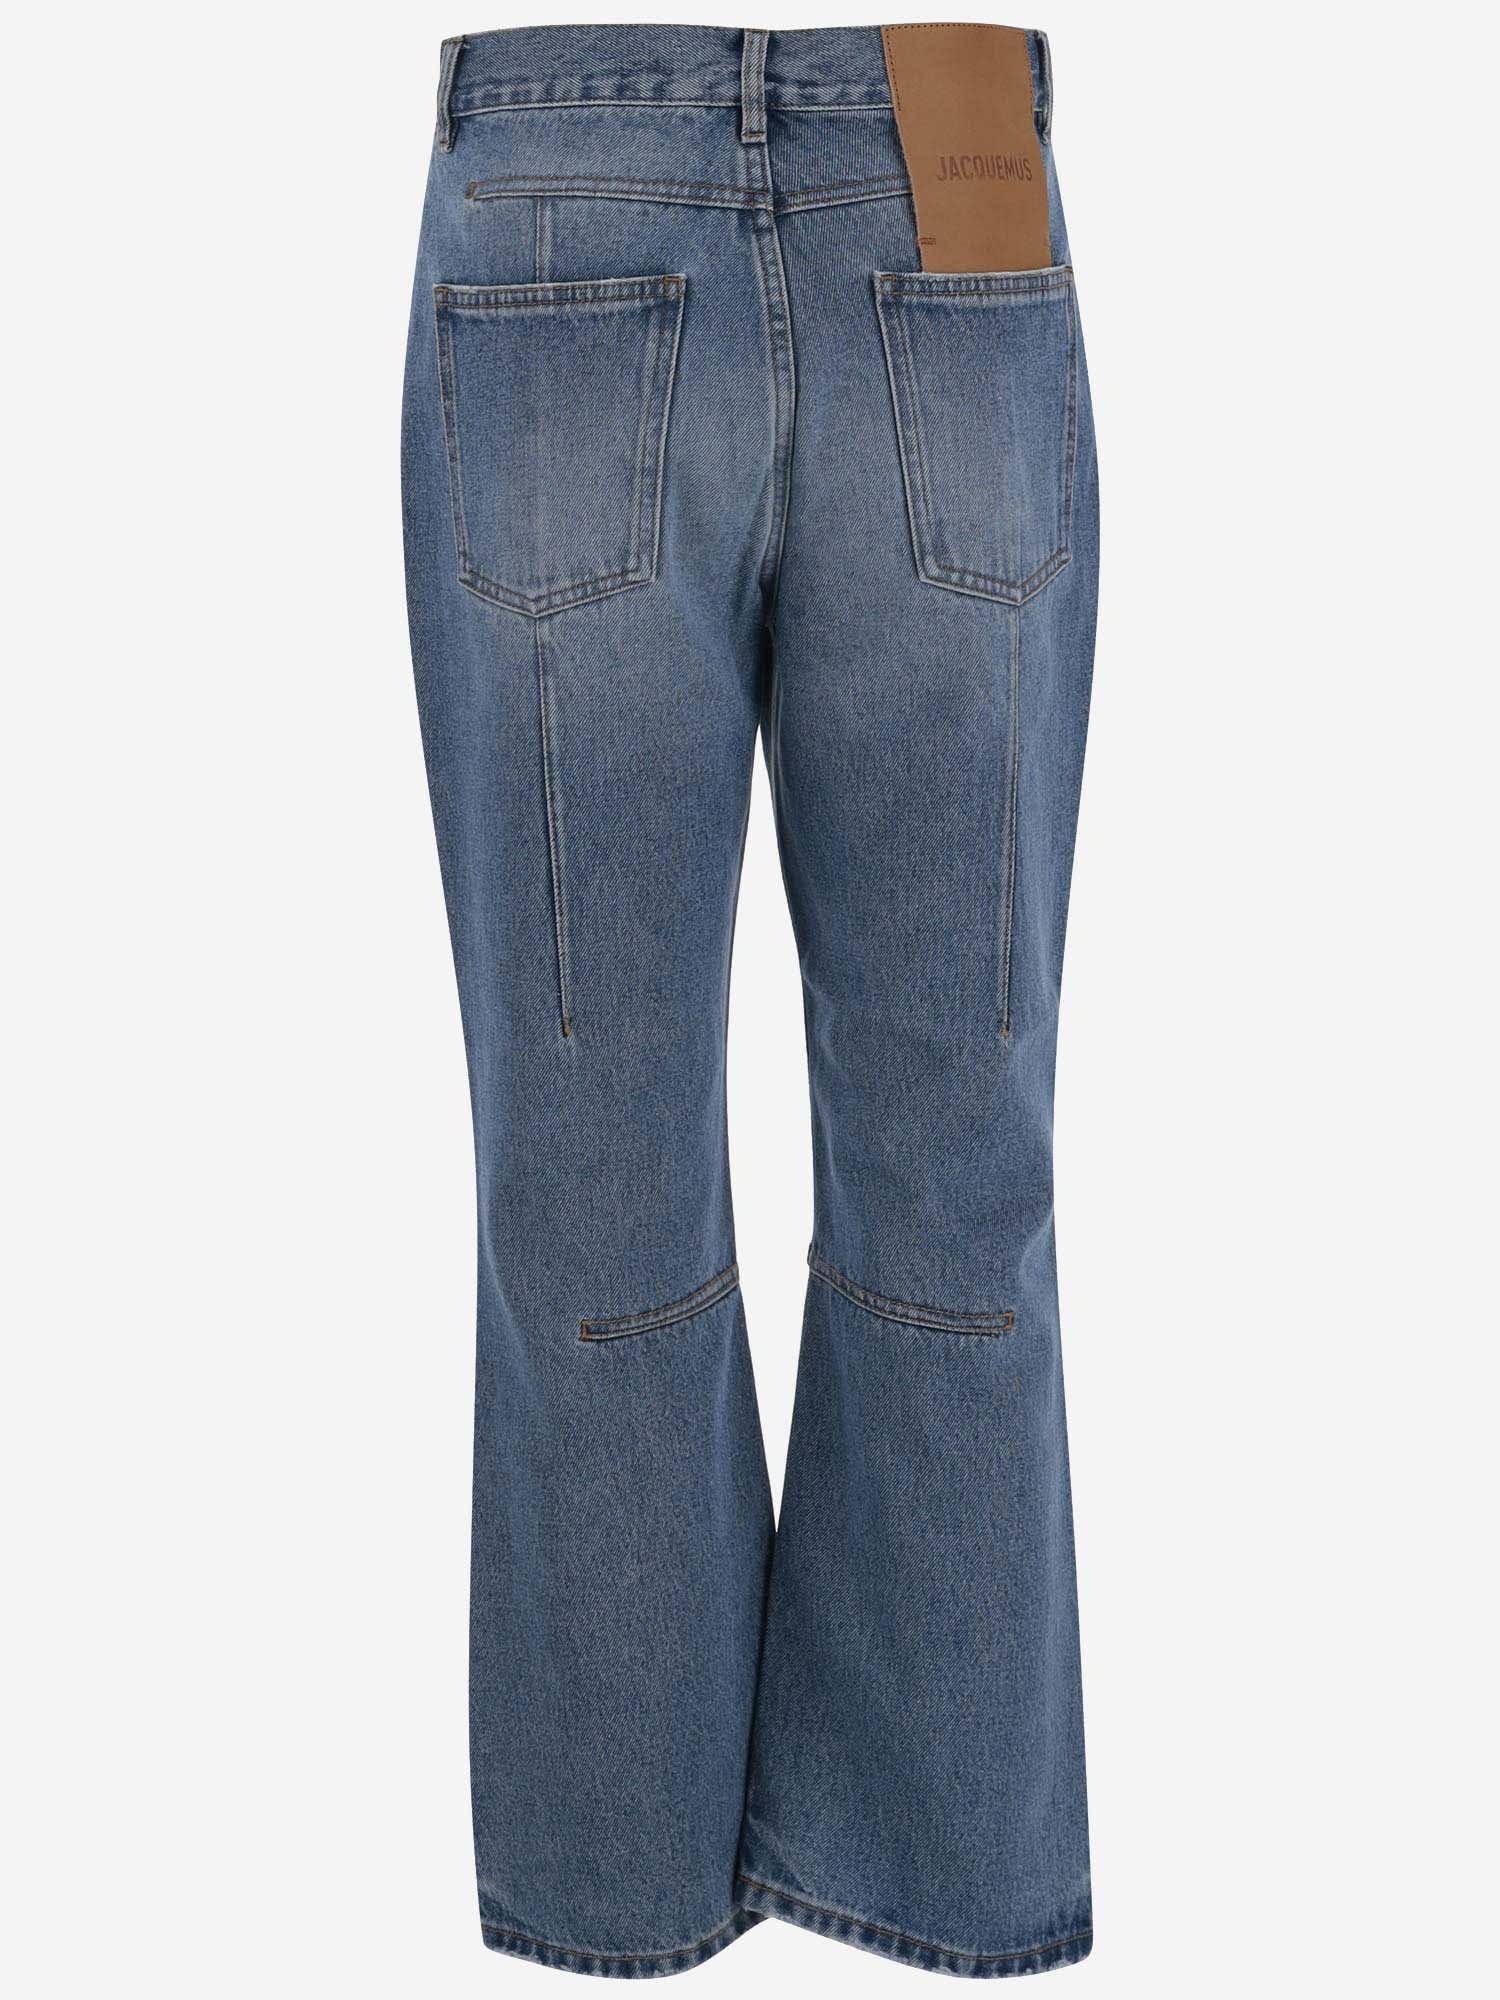 Shop Jacquemus Cotton Denim Jeans